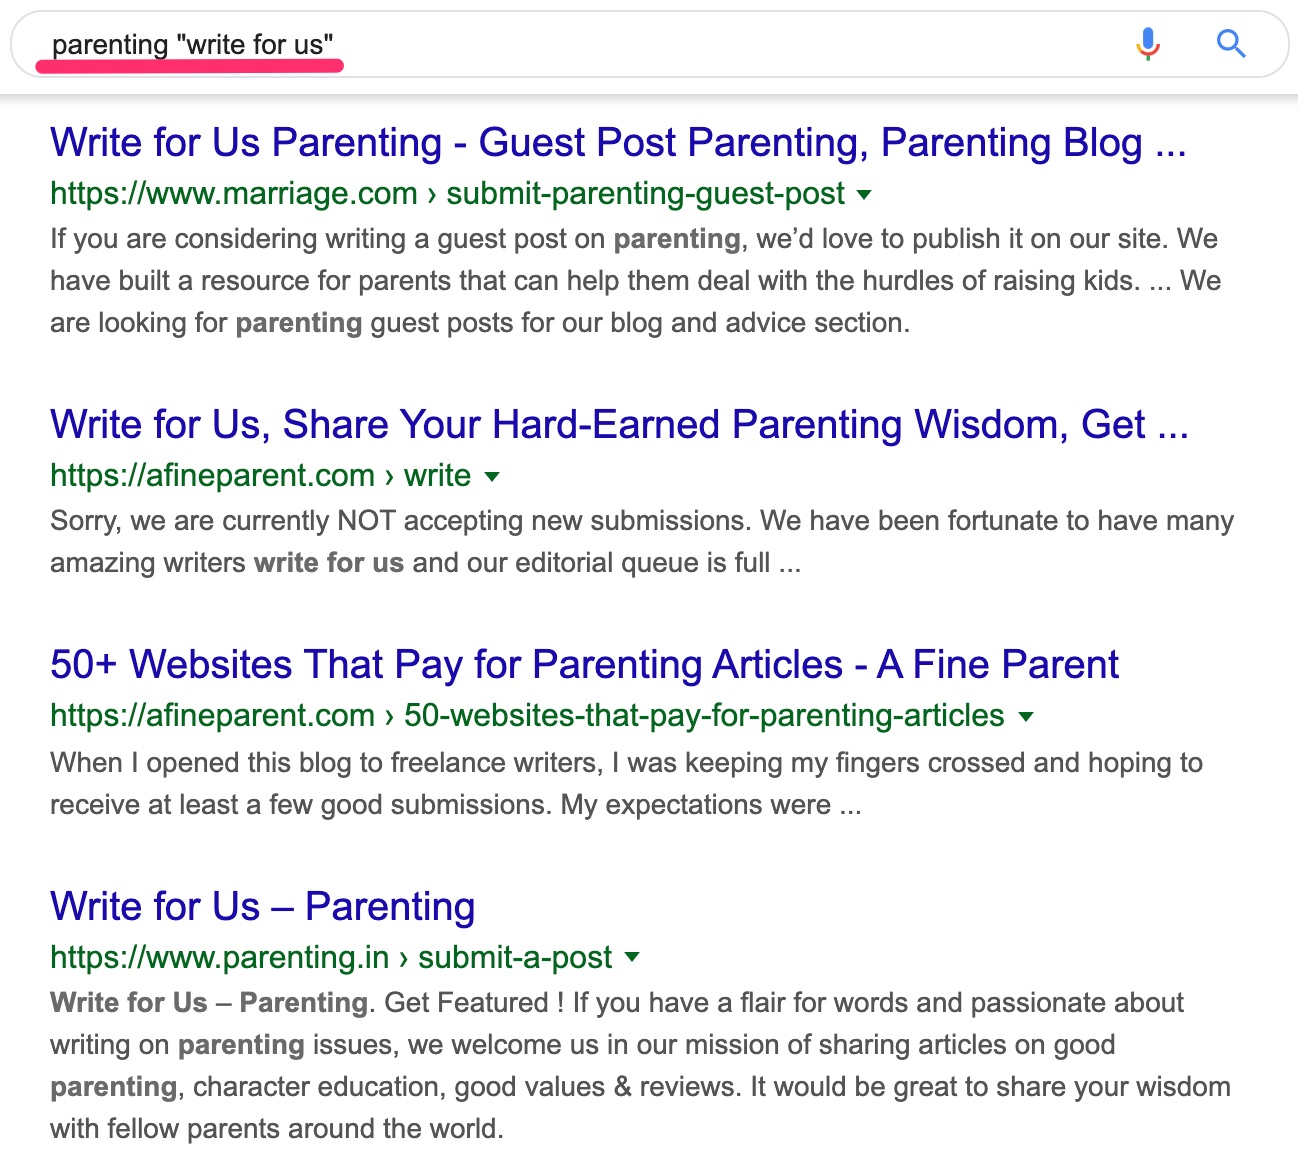 la parentalité nous écrit Google Recherche "srcset =" https://ahrefs.com/blog/wp-content/uploads/2019/11/parenting__write_for_us__-_Google_Search.jpg 1298w, https://ahrefs.com/blog/wp-content /uploads/2019/11/parenting__write_for_us__-_Google_Search-477x425.jpg 477w, https://ahrefs.com/blog/wp-content/uploads/2019/11/parenting__write_for_us__-_Google_Search_768x684.jpg 768w "7 -width: 1298px) 100vw, 1298px